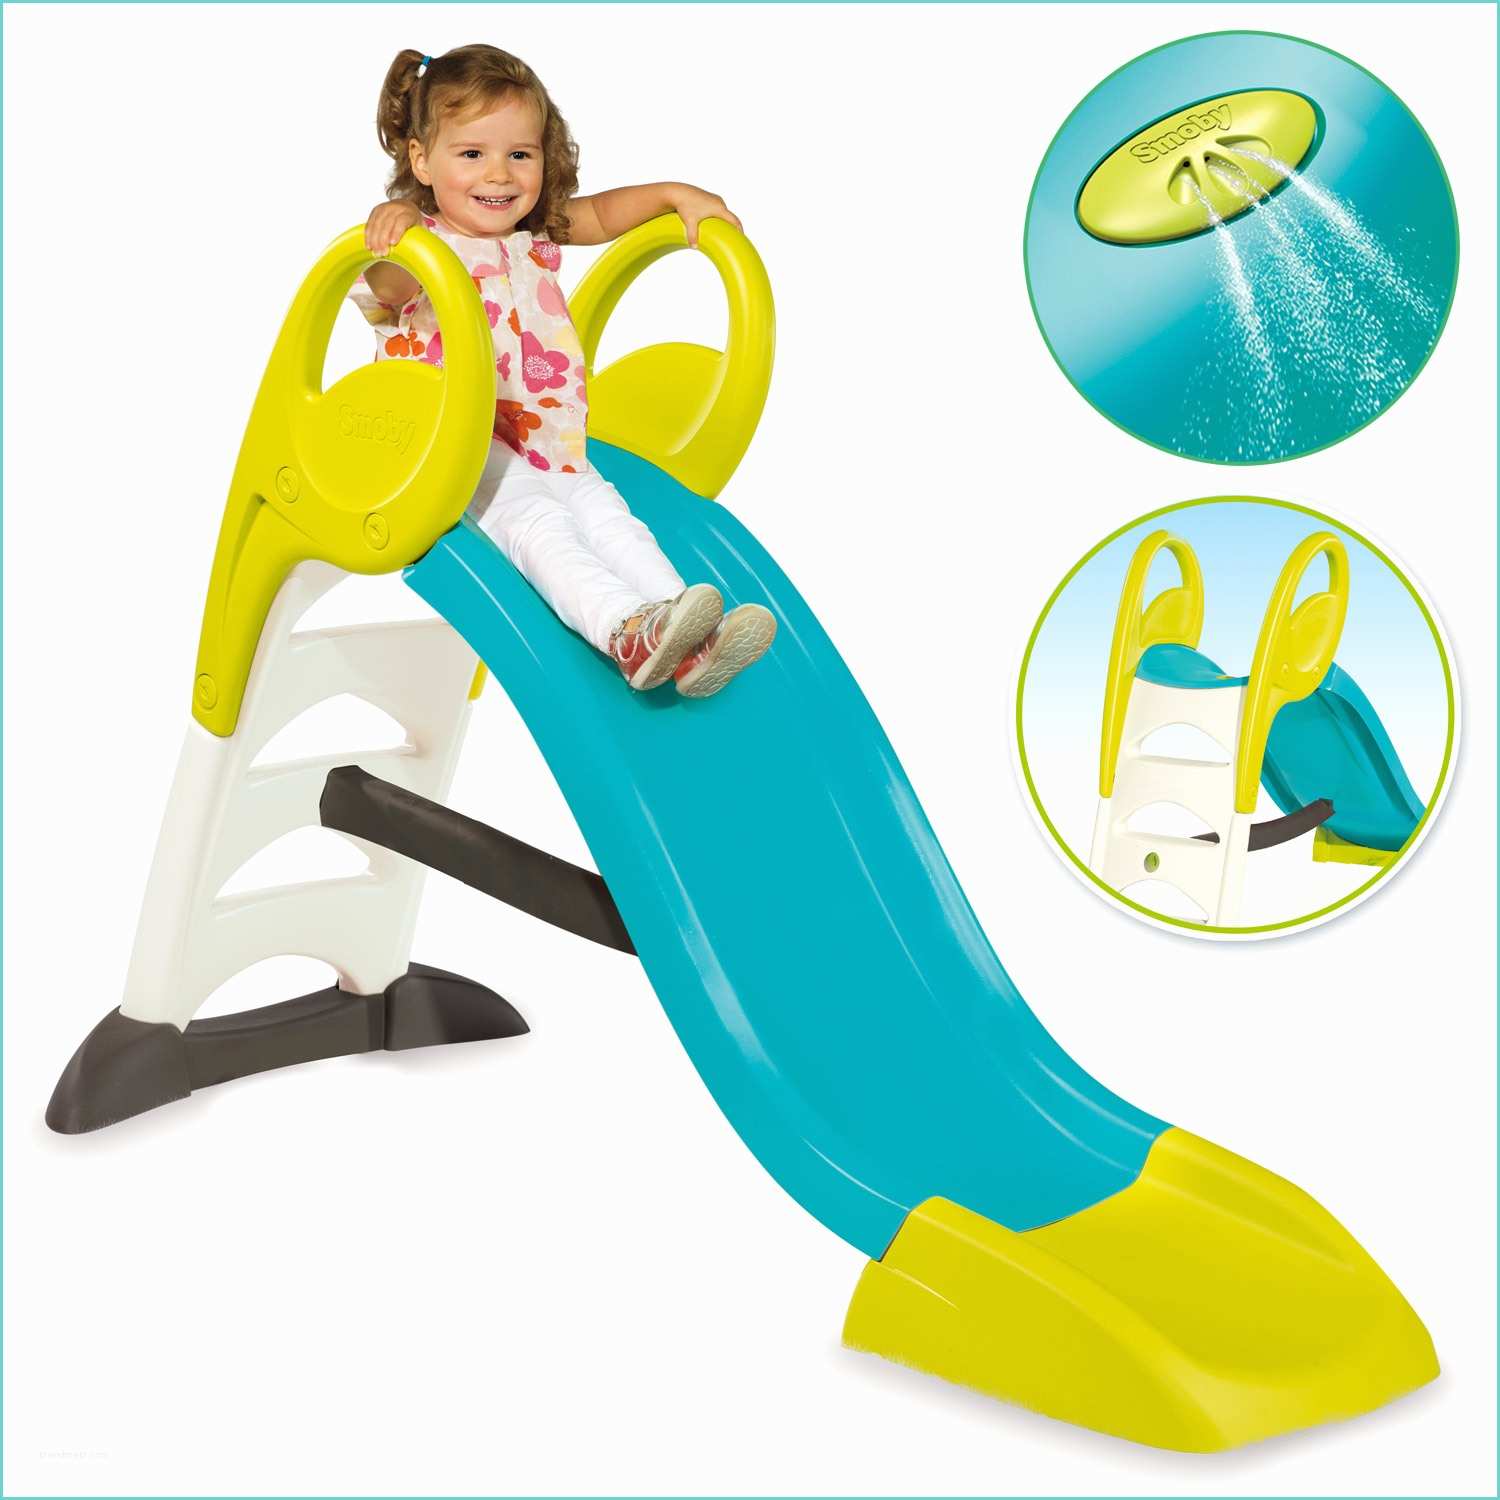 Ebay Scivolo Per Bambini Smoby Scivolo 150cm Turchese Ondulato Allacciamento Acqua